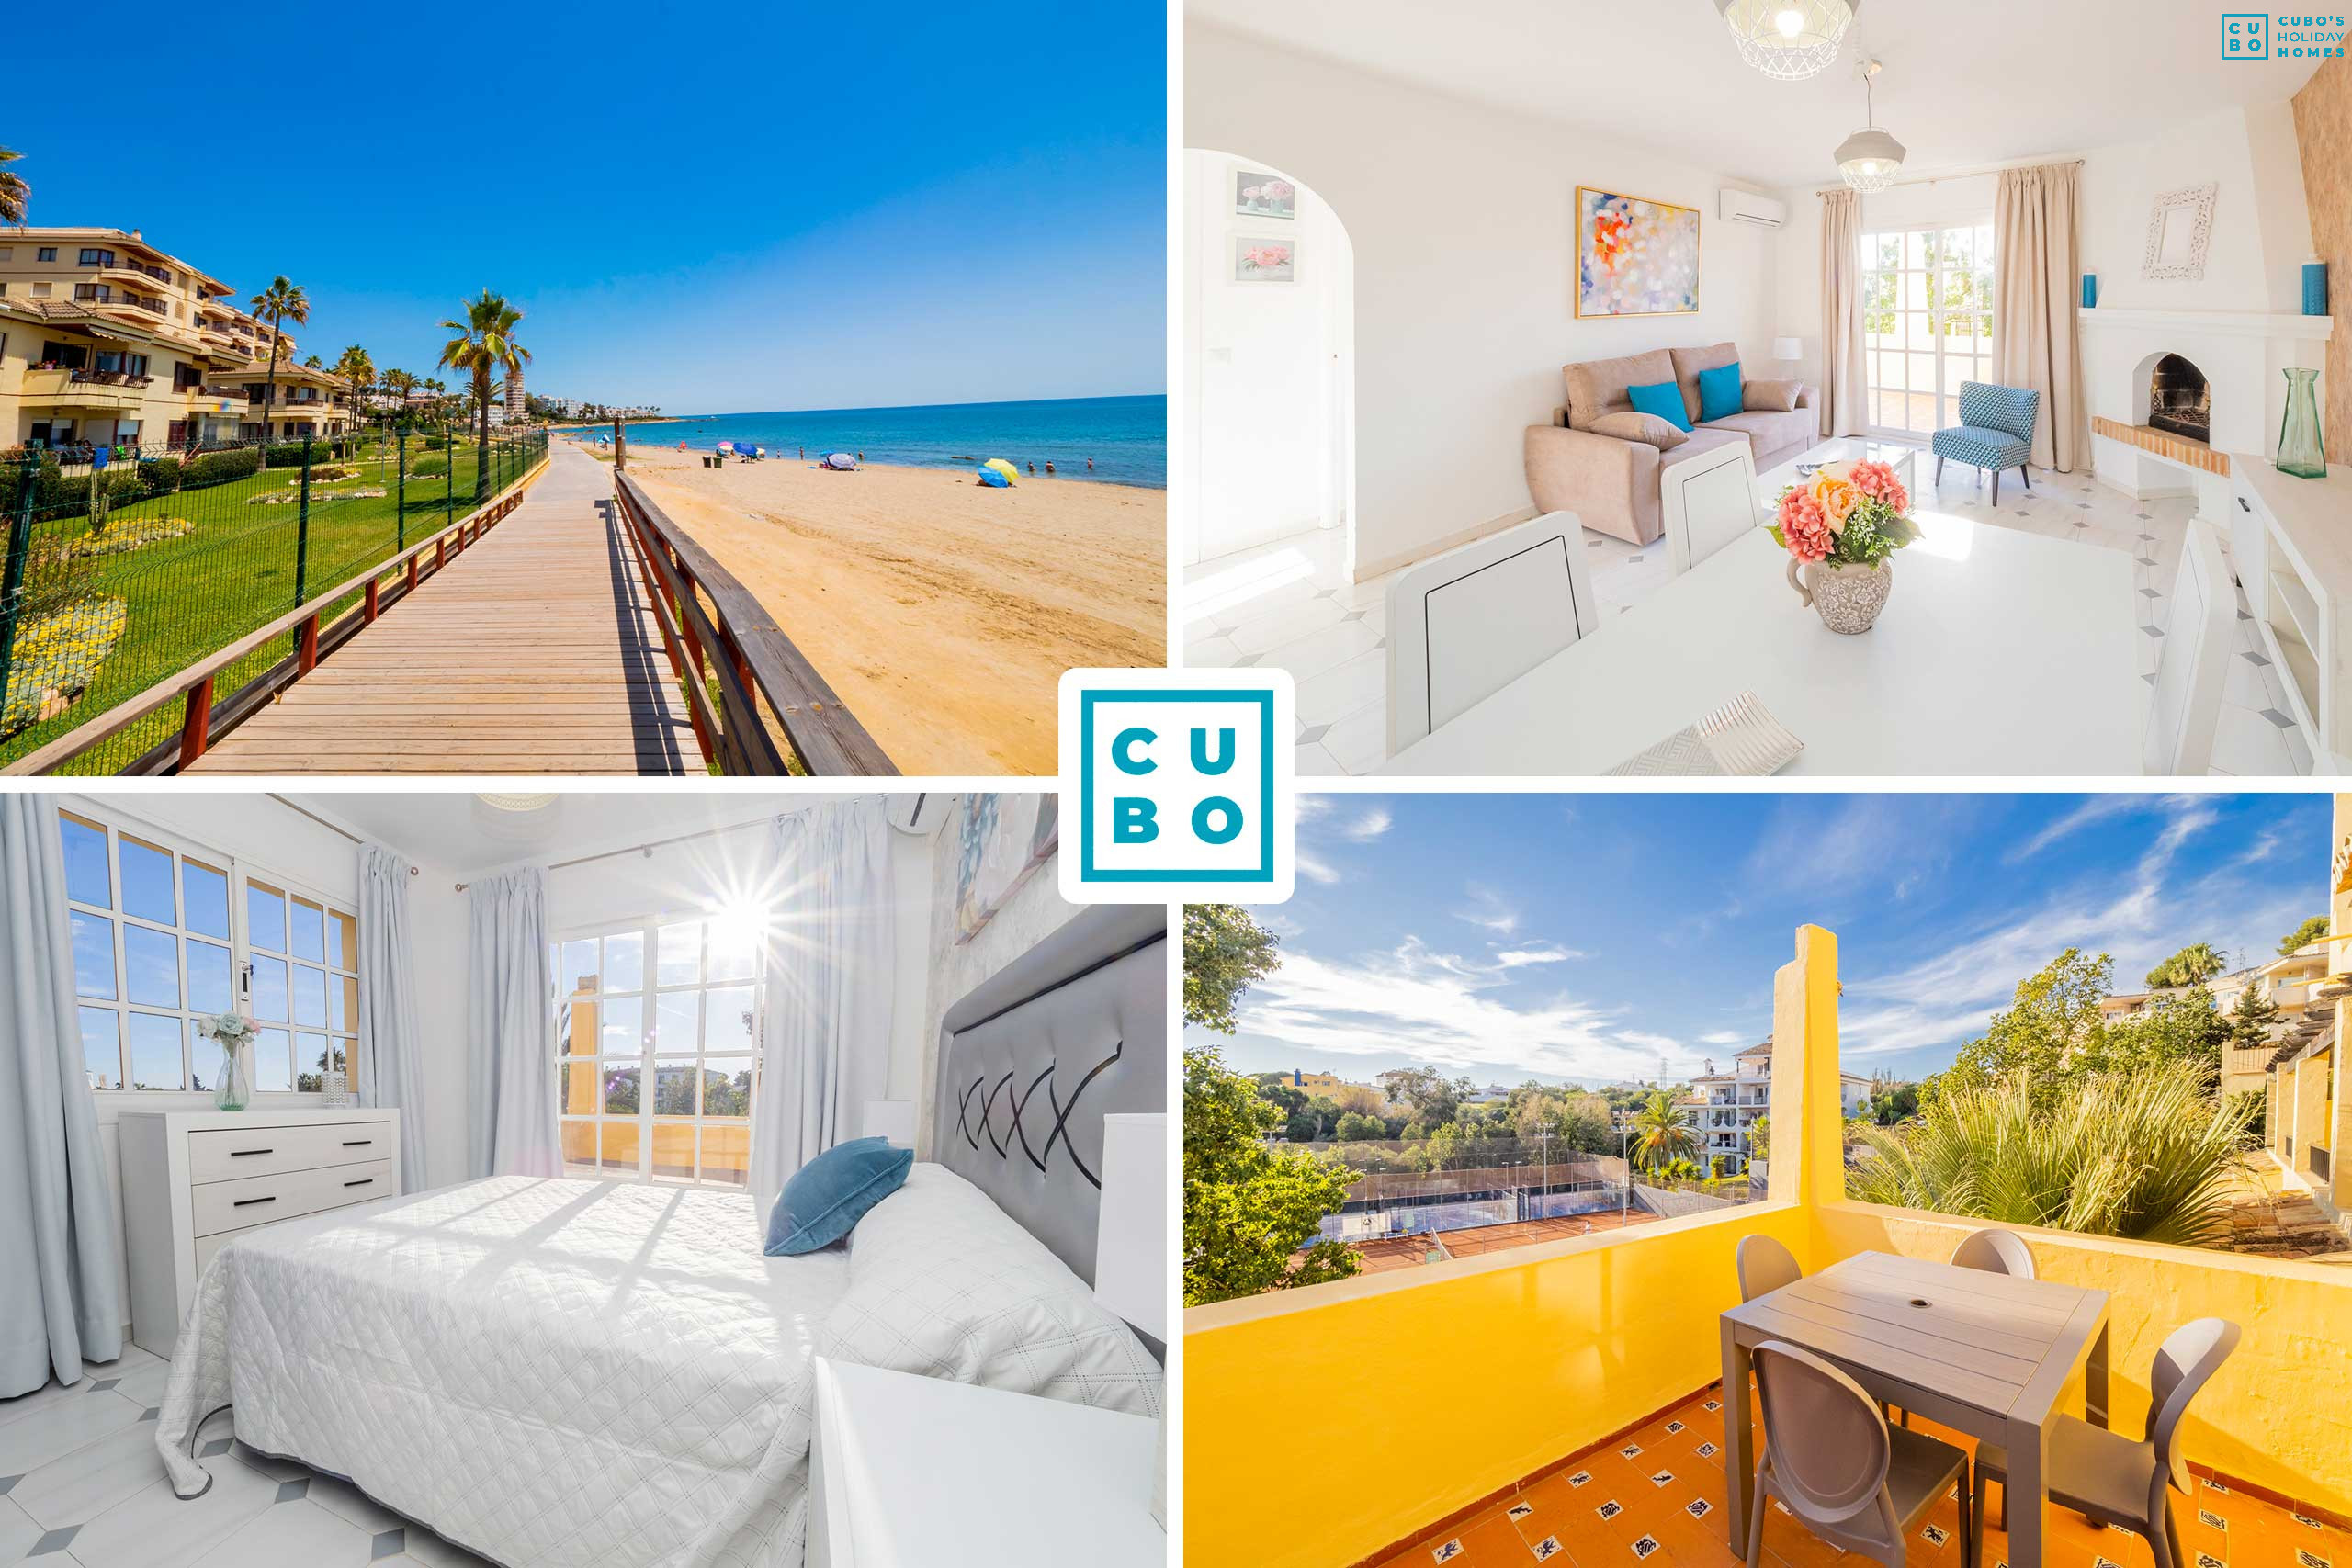 Encantador apartamento en Mijas Costa junto a la playa con pista de tenis.